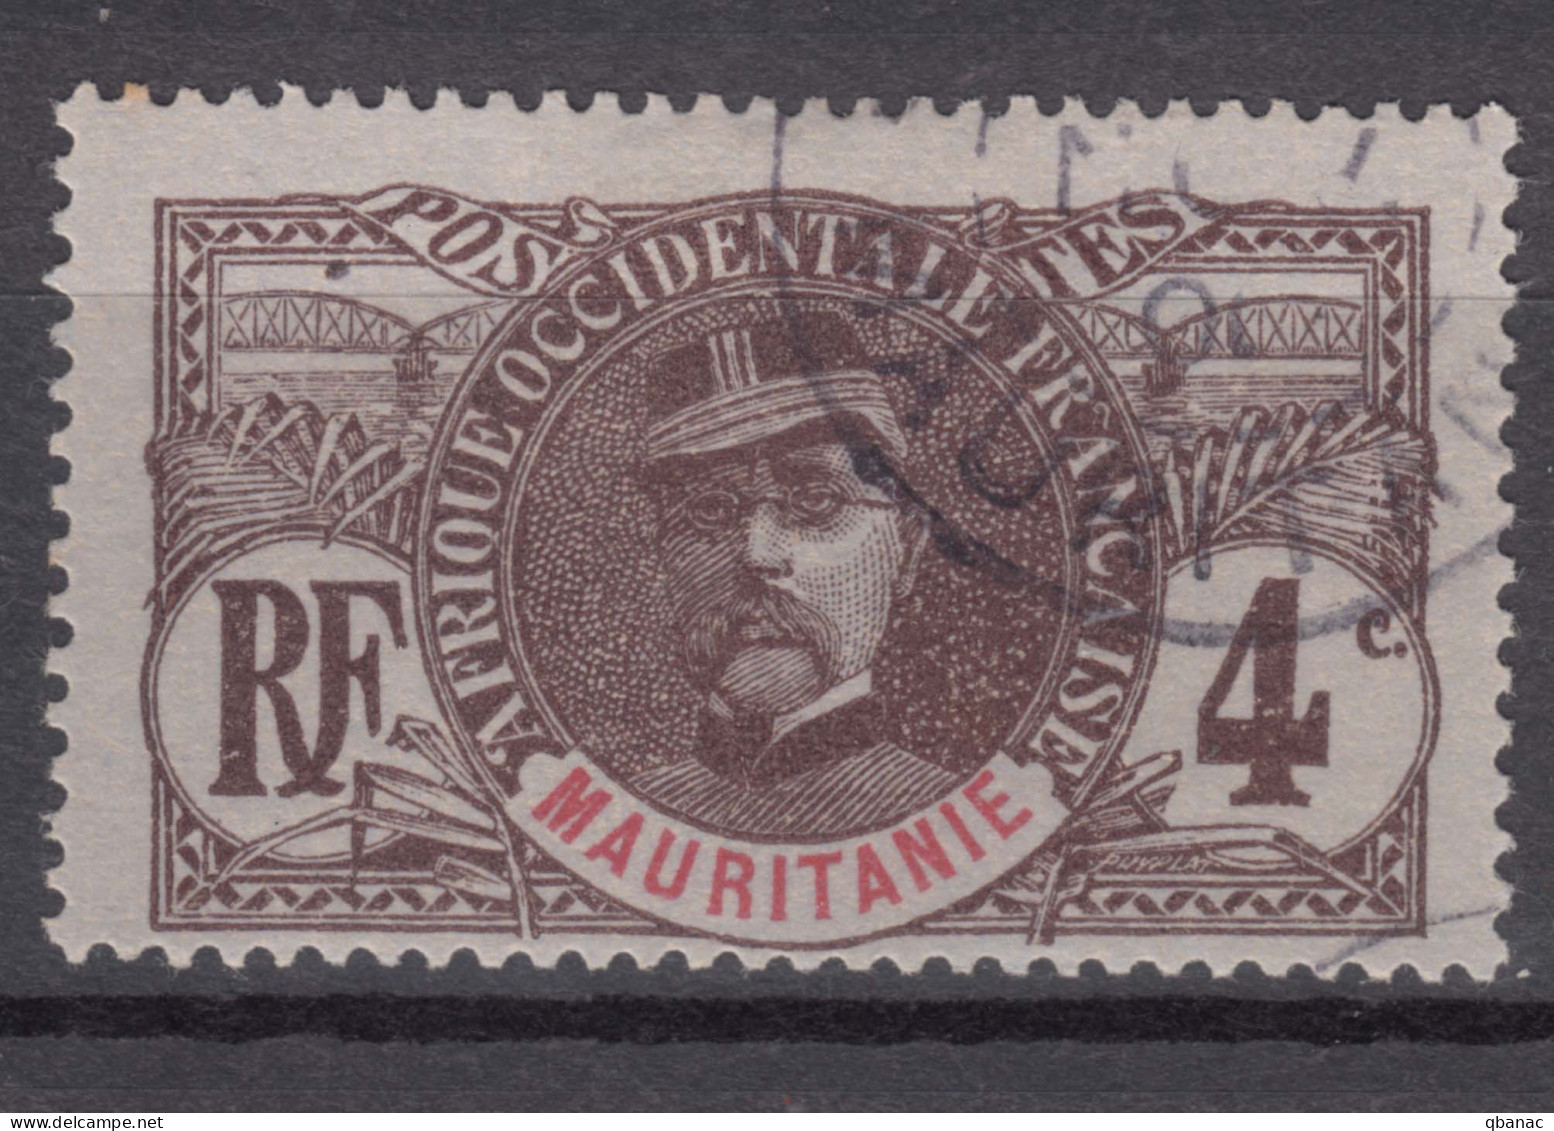 Mauritania Mauritanie 1906 Yvert#3 Used - Oblitérés